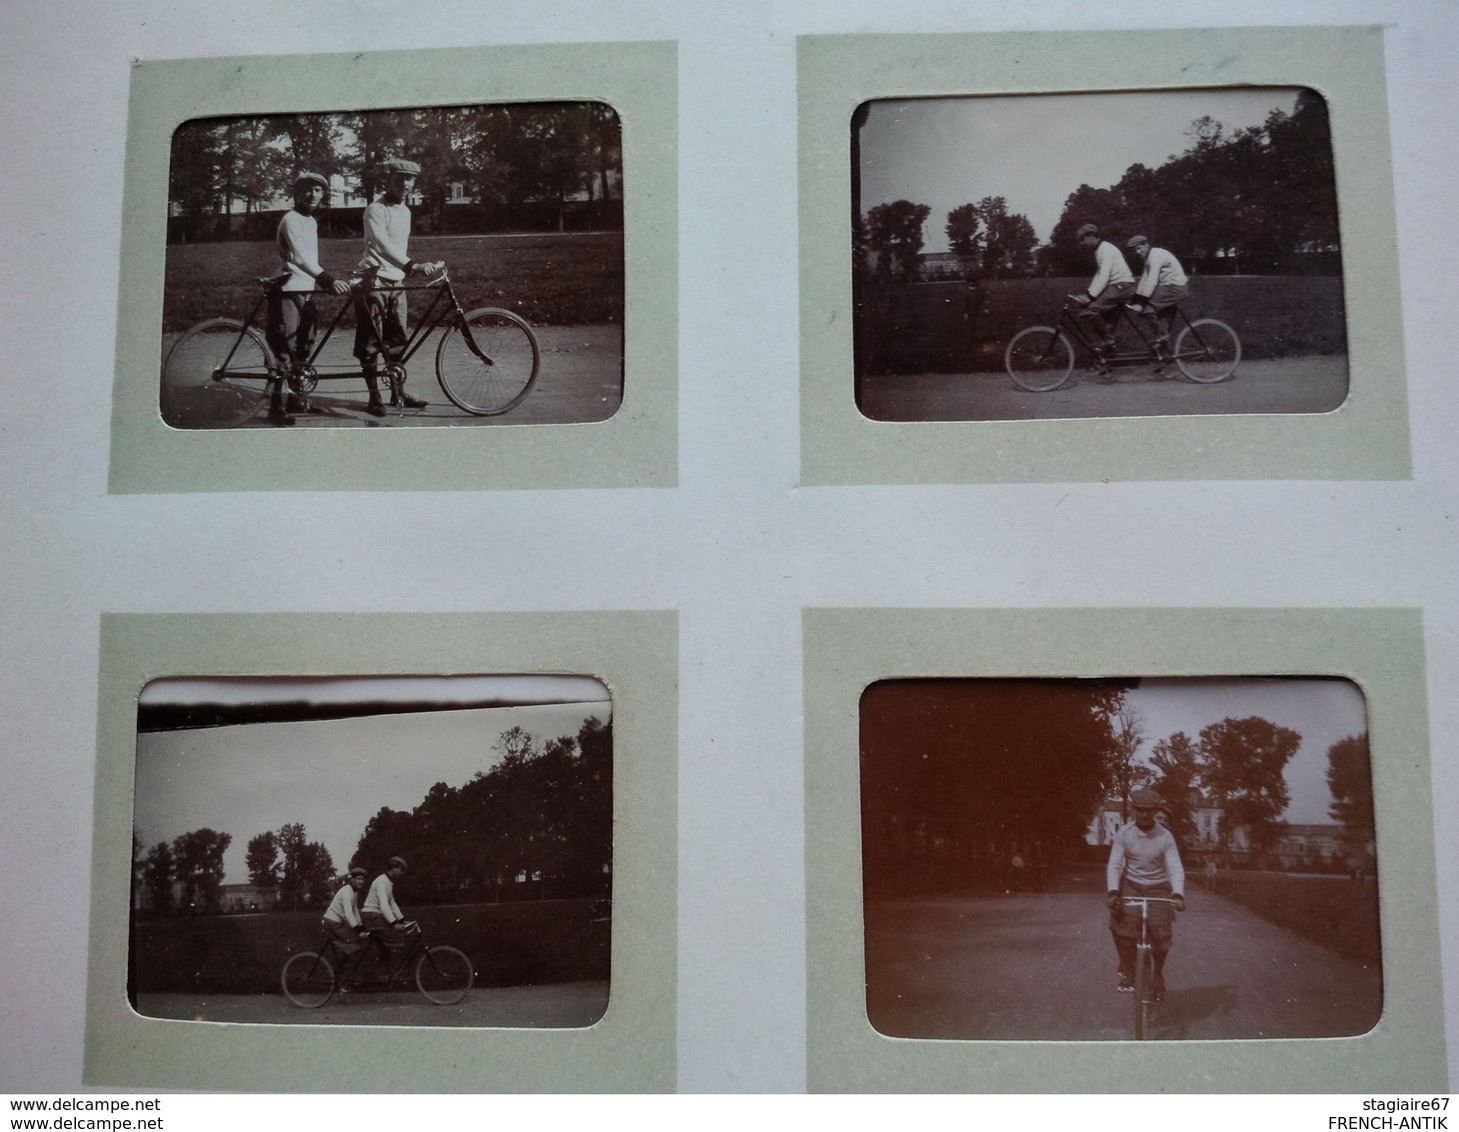 ALBUM PHOTO ANCIEN 1900 ROYAUME UNI PARIS THEMES DIVERS BATEAU CYCLISME ETC